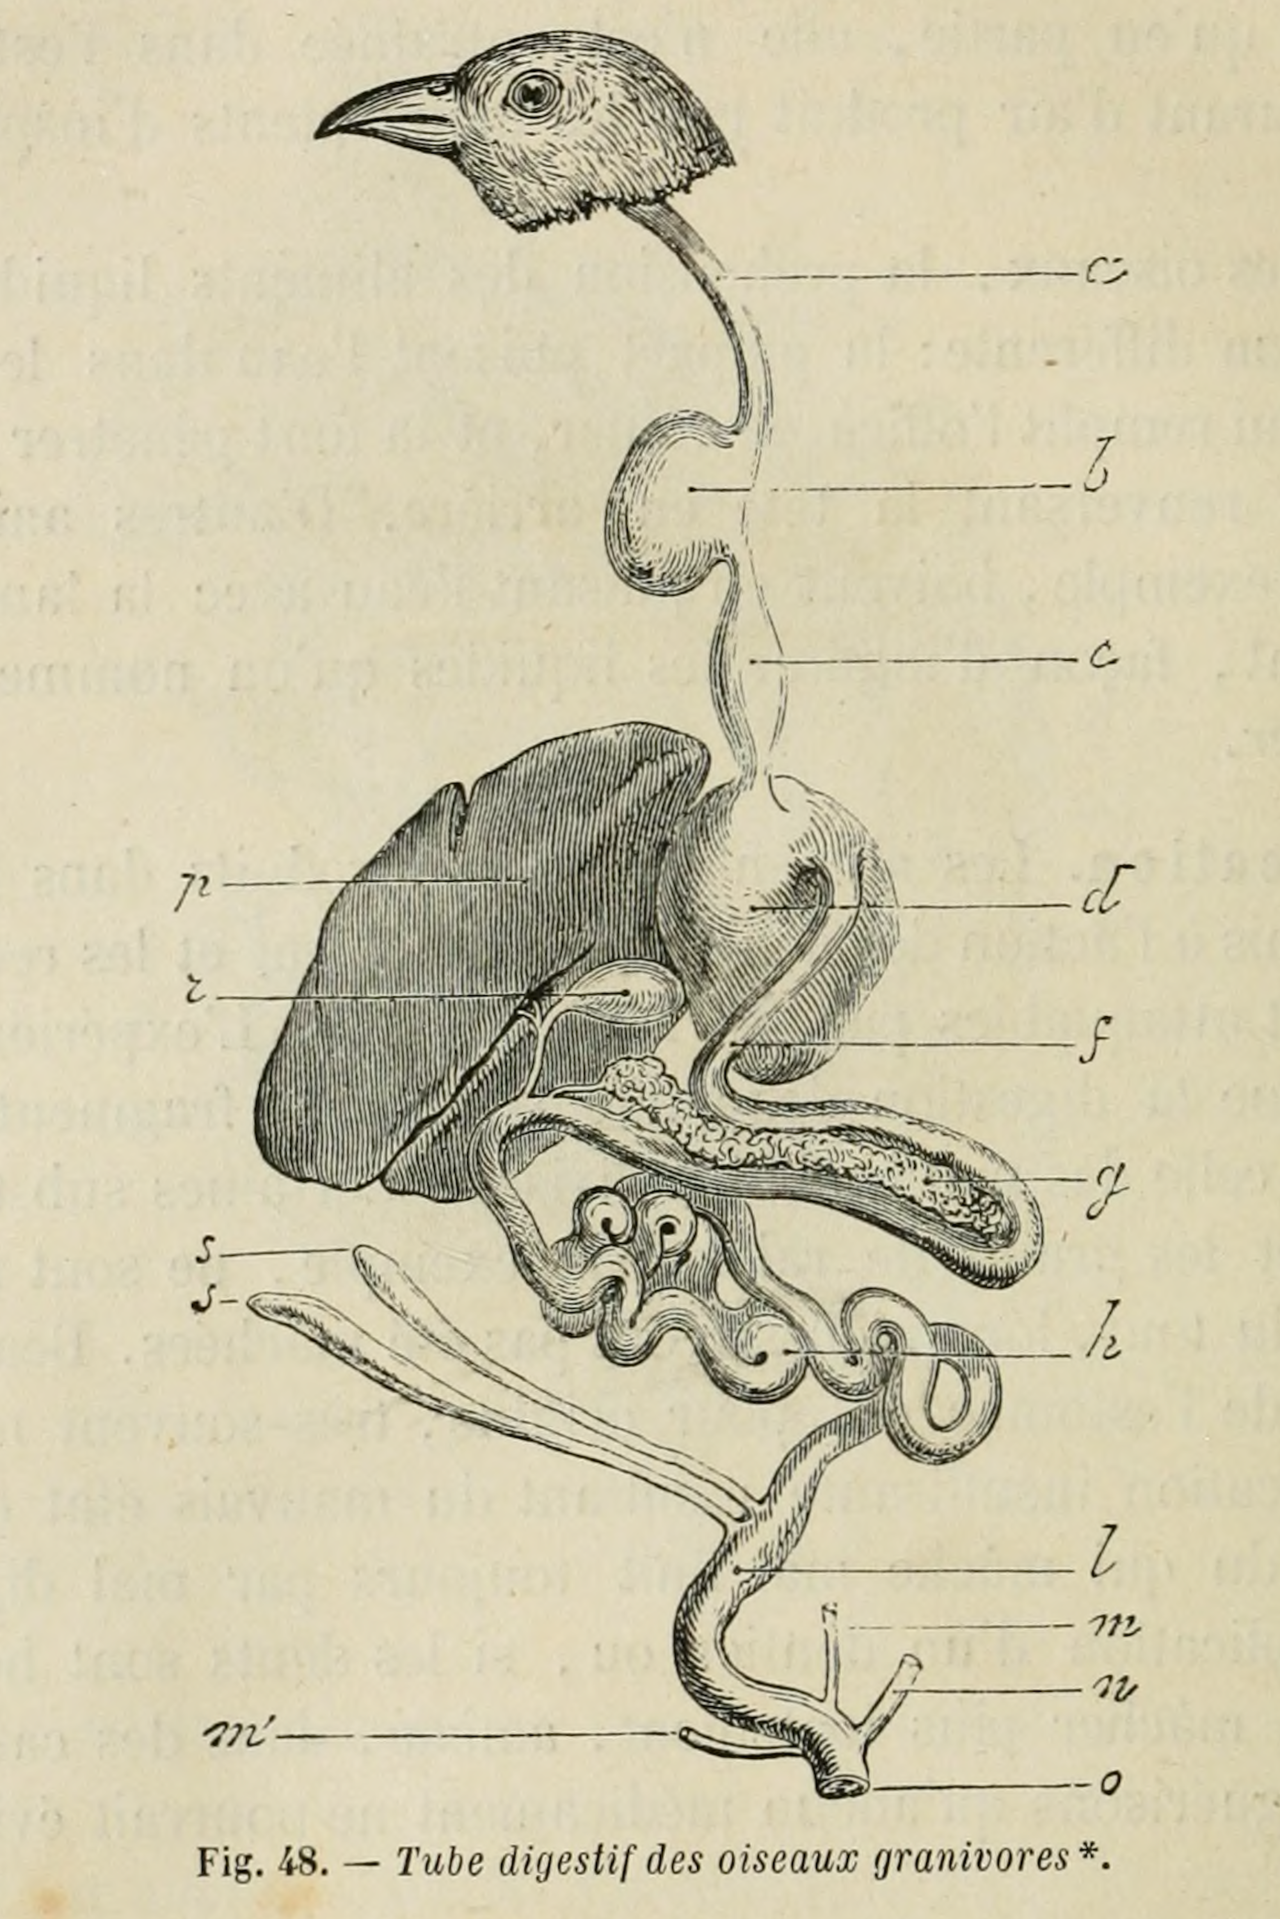 nemfrog:
“ Fig. 48. Digestive system of grain-eating birds. La vie : physiologie humaine appliquée à l'hygiène et à la médecine. 1874.
Internet Archive
”